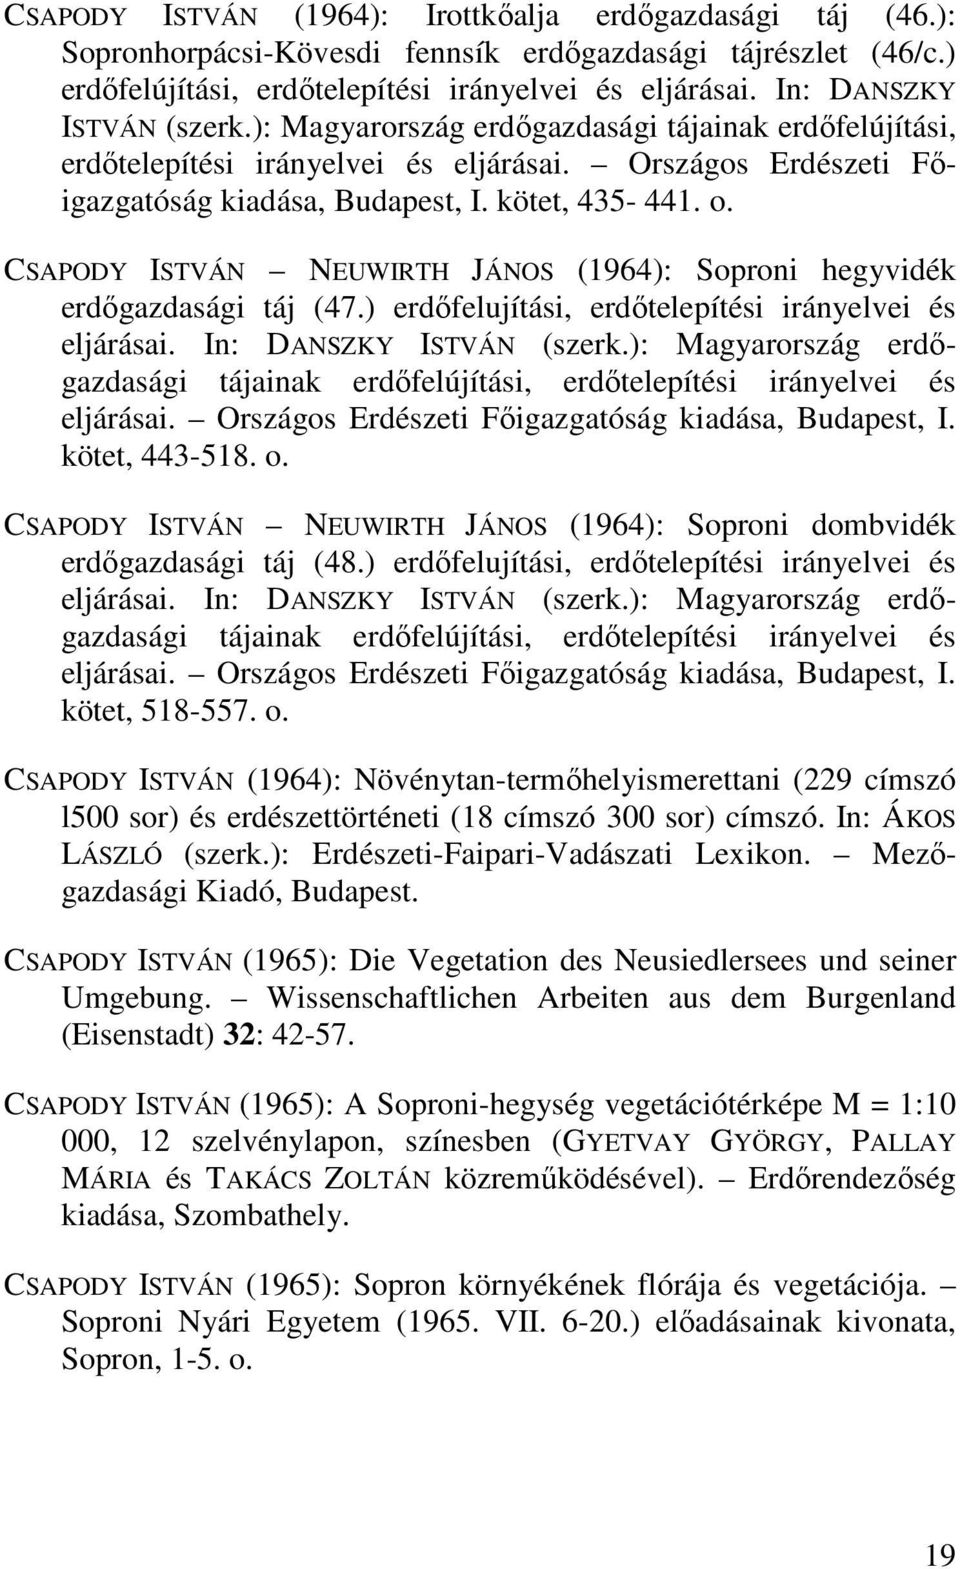 CSAPODY ISTVÁN NEUWIRTH JÁNOS (1964): Soproni hegyvidék erdıgazdasági táj (47.) erdıfelujítási, erdıtelepítési irányelvei és eljárásai. In: DANSZKY ISTVÁN (szerk.